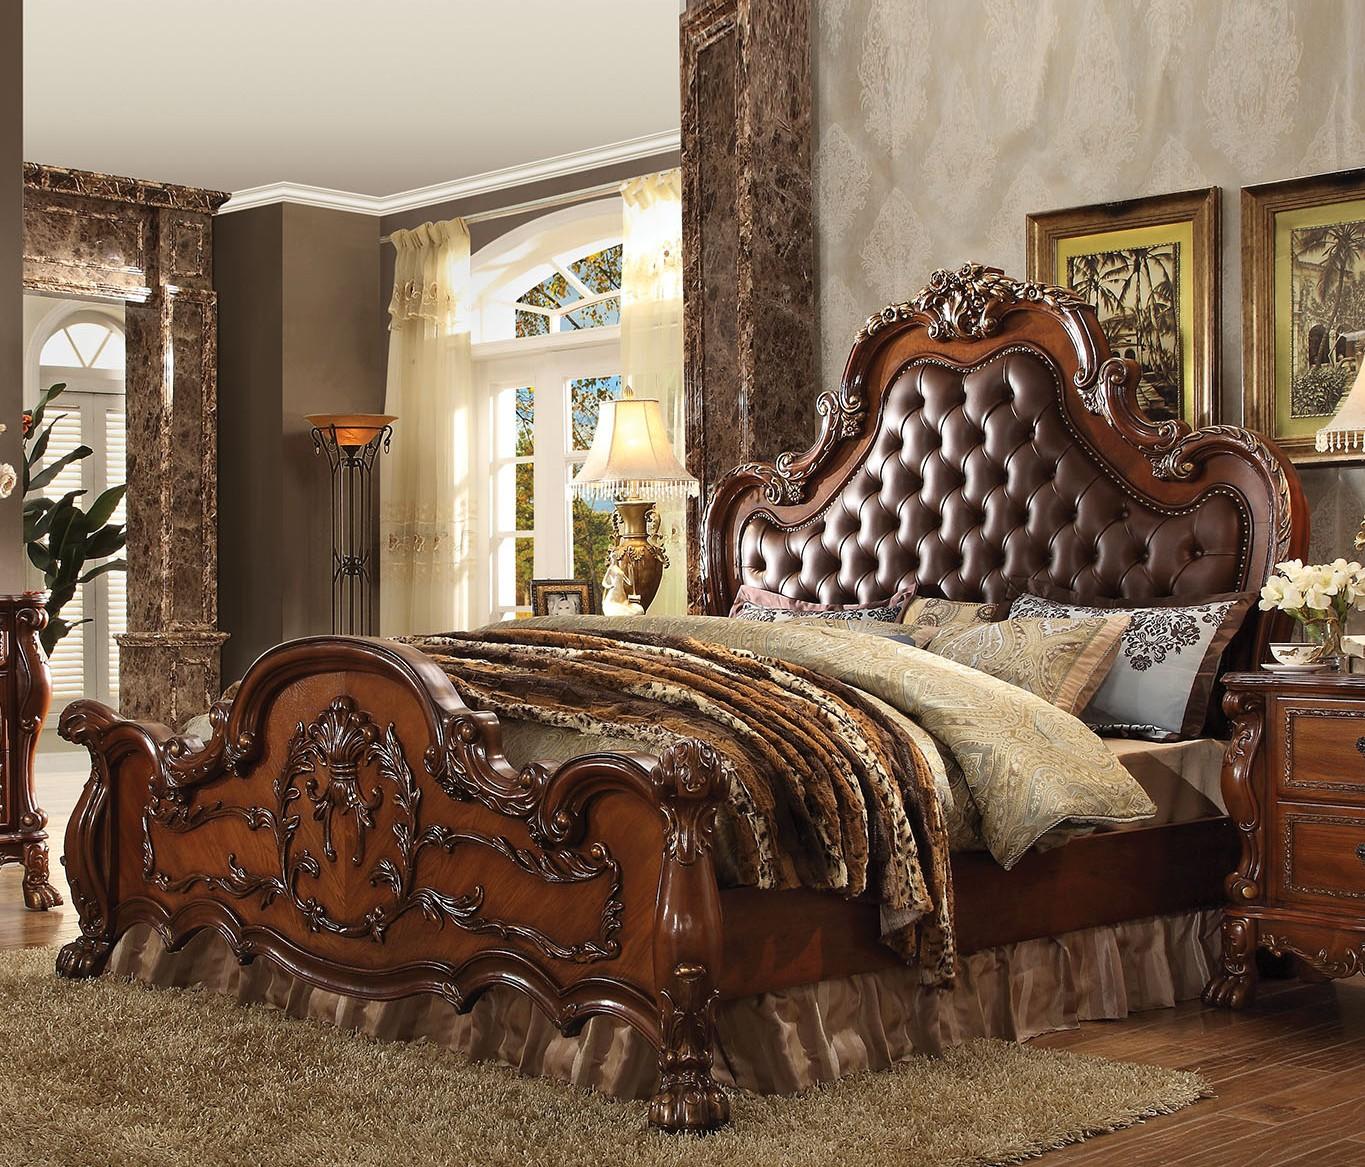 

    
Tufted Cherry Oak Queen Bedroom Set 5Pcs Dresden 23140Q Acme Victorian Classic
